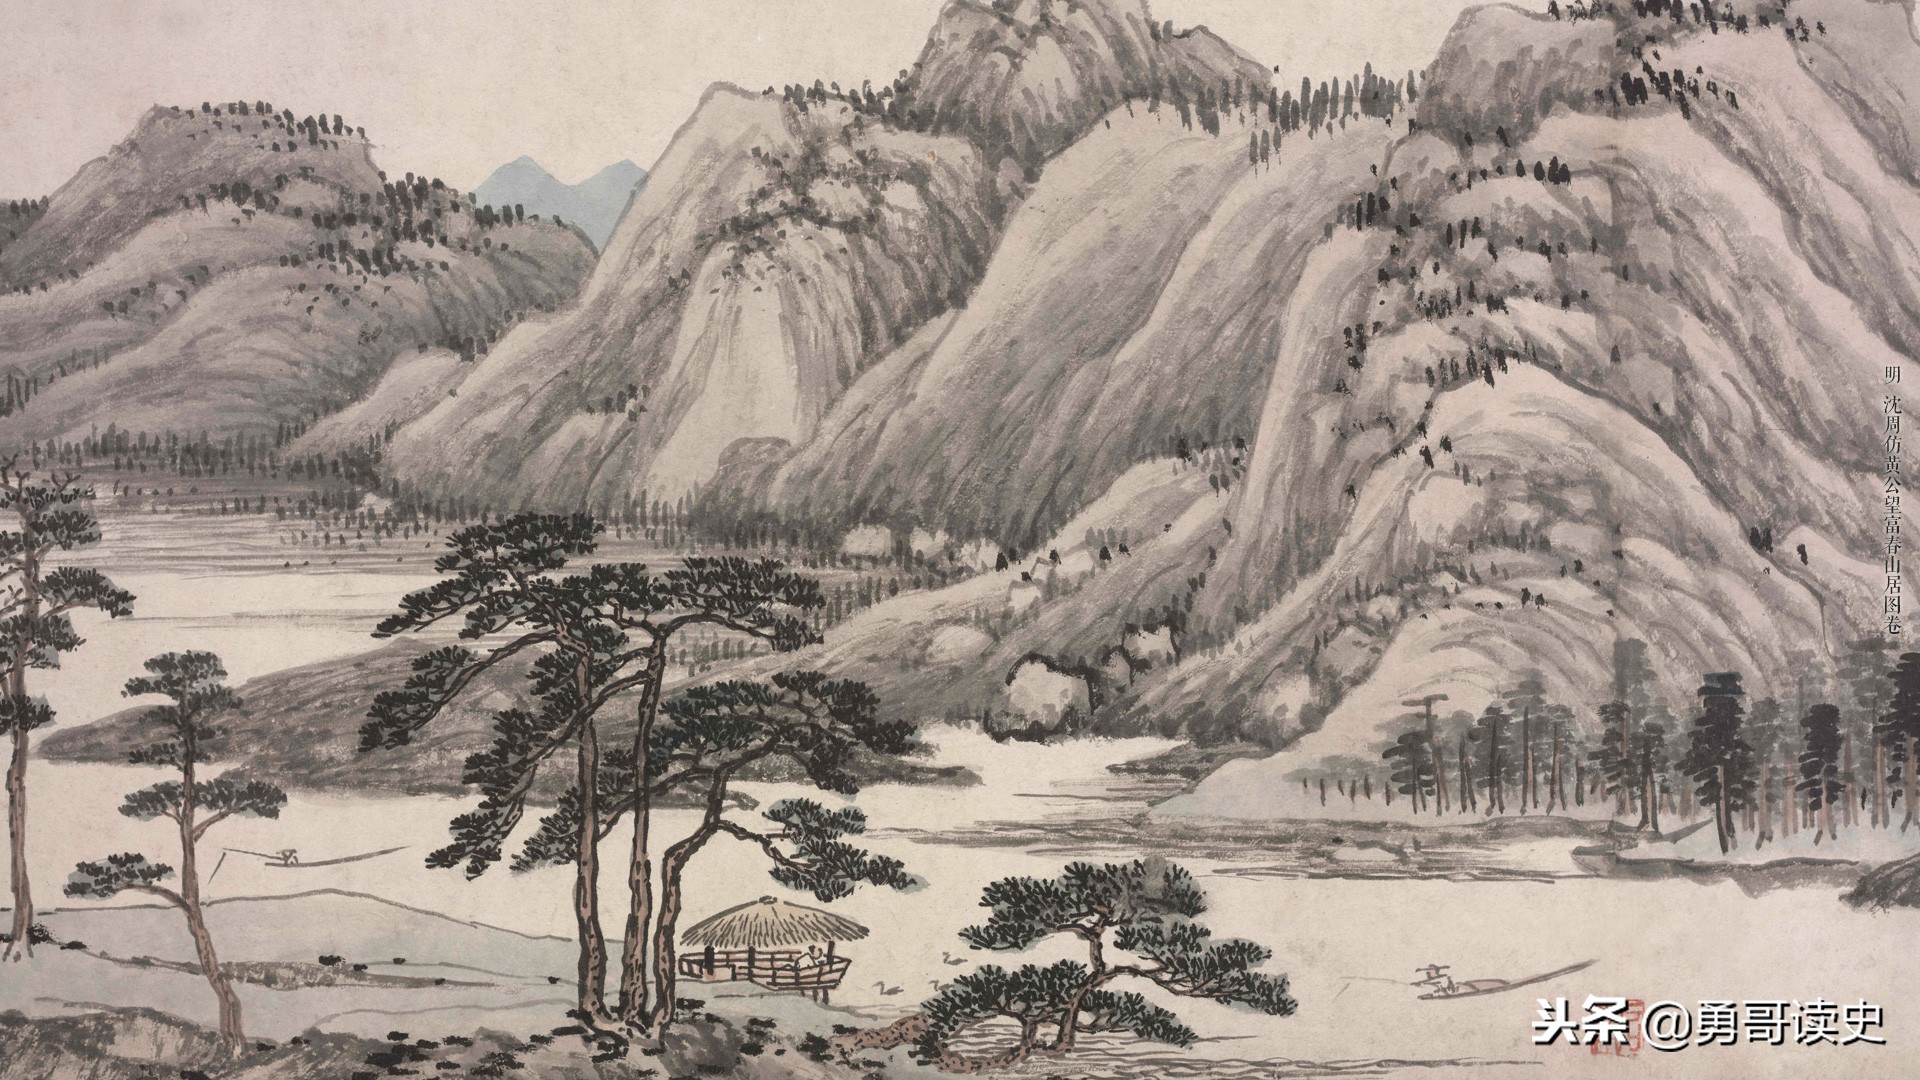 中国传世名画《富春山居图》为何一半在大陆一半在台湾